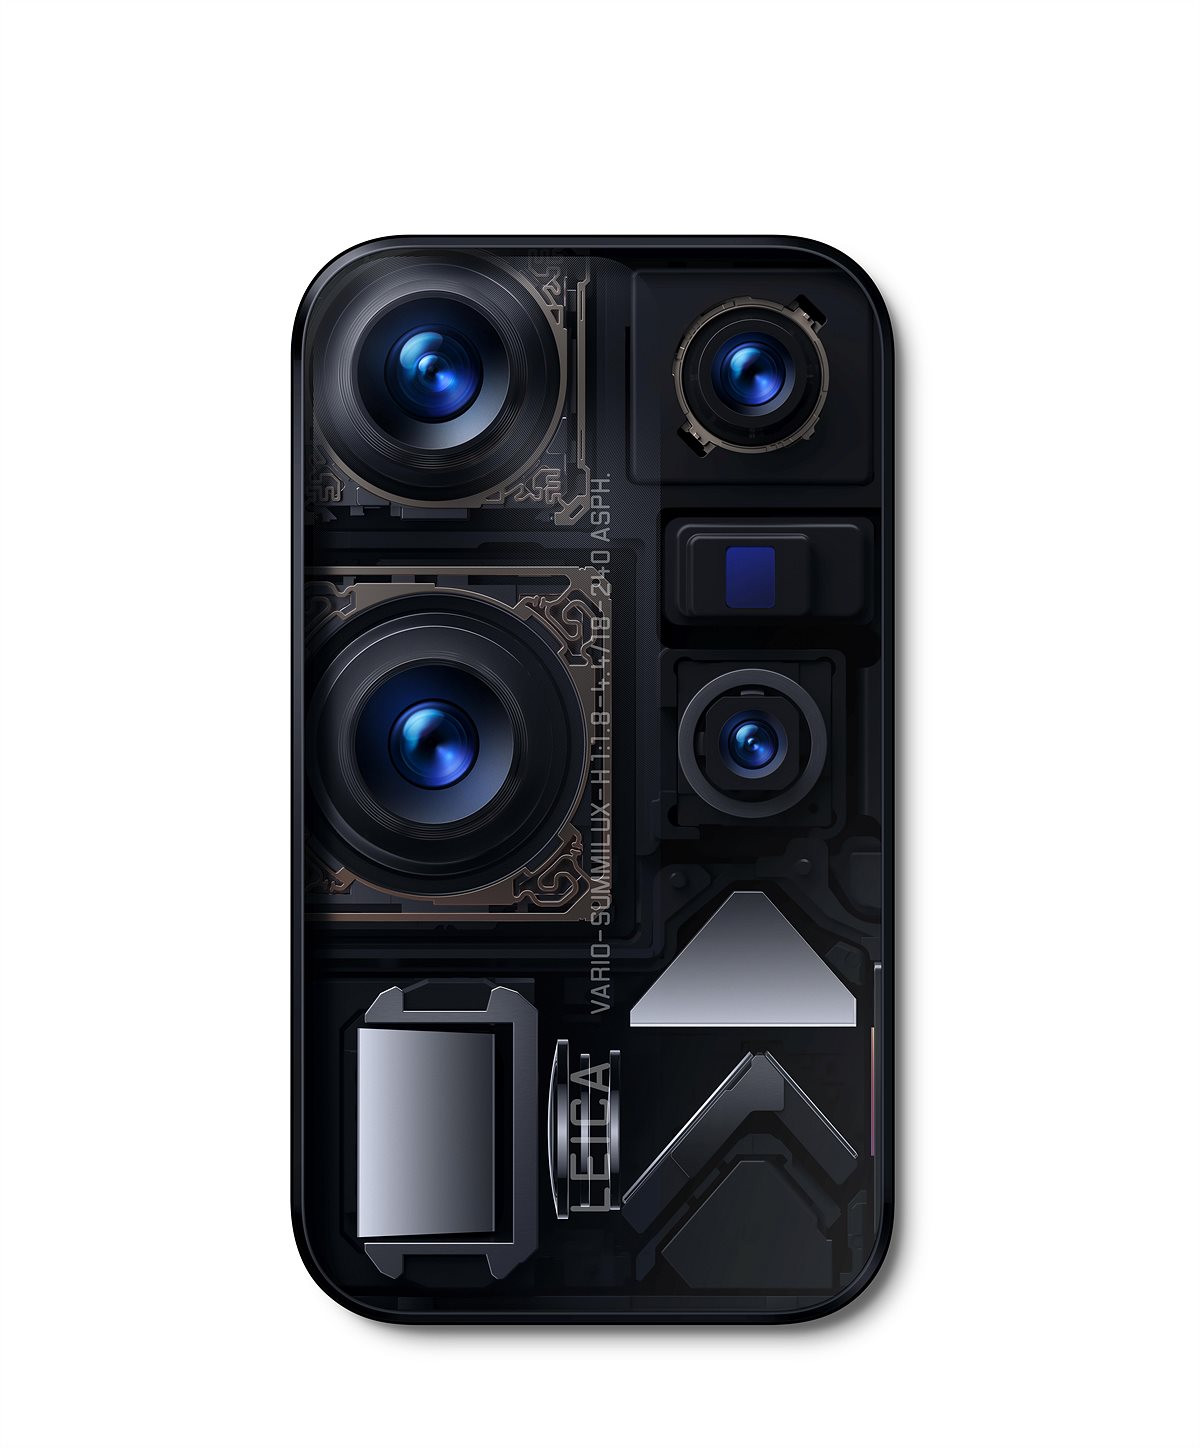 Huawei P40 Pro+ Kamerakonfiguration